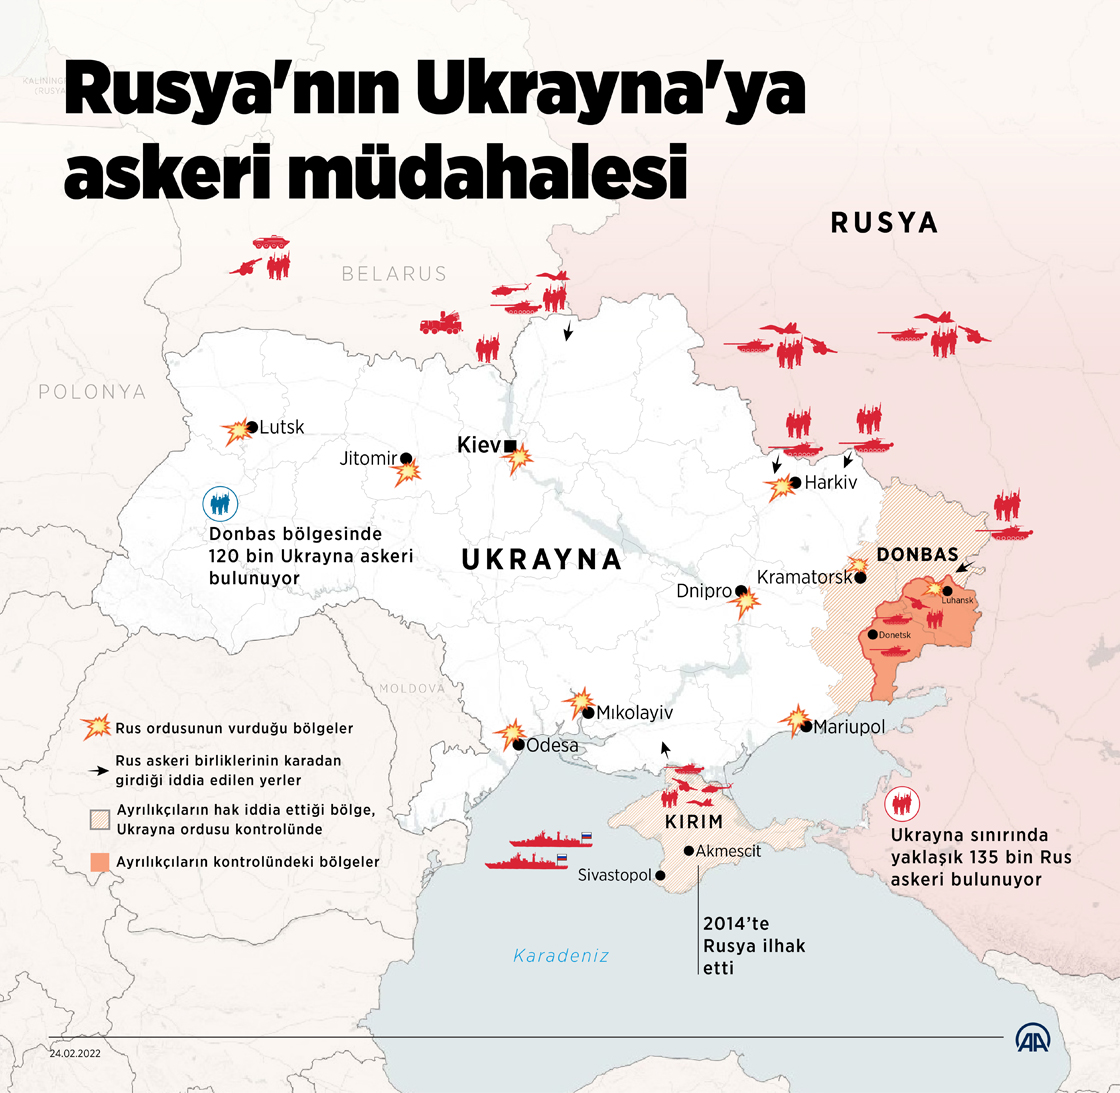 Rusya'nın Ukrayna'ya askeri müdahalesi